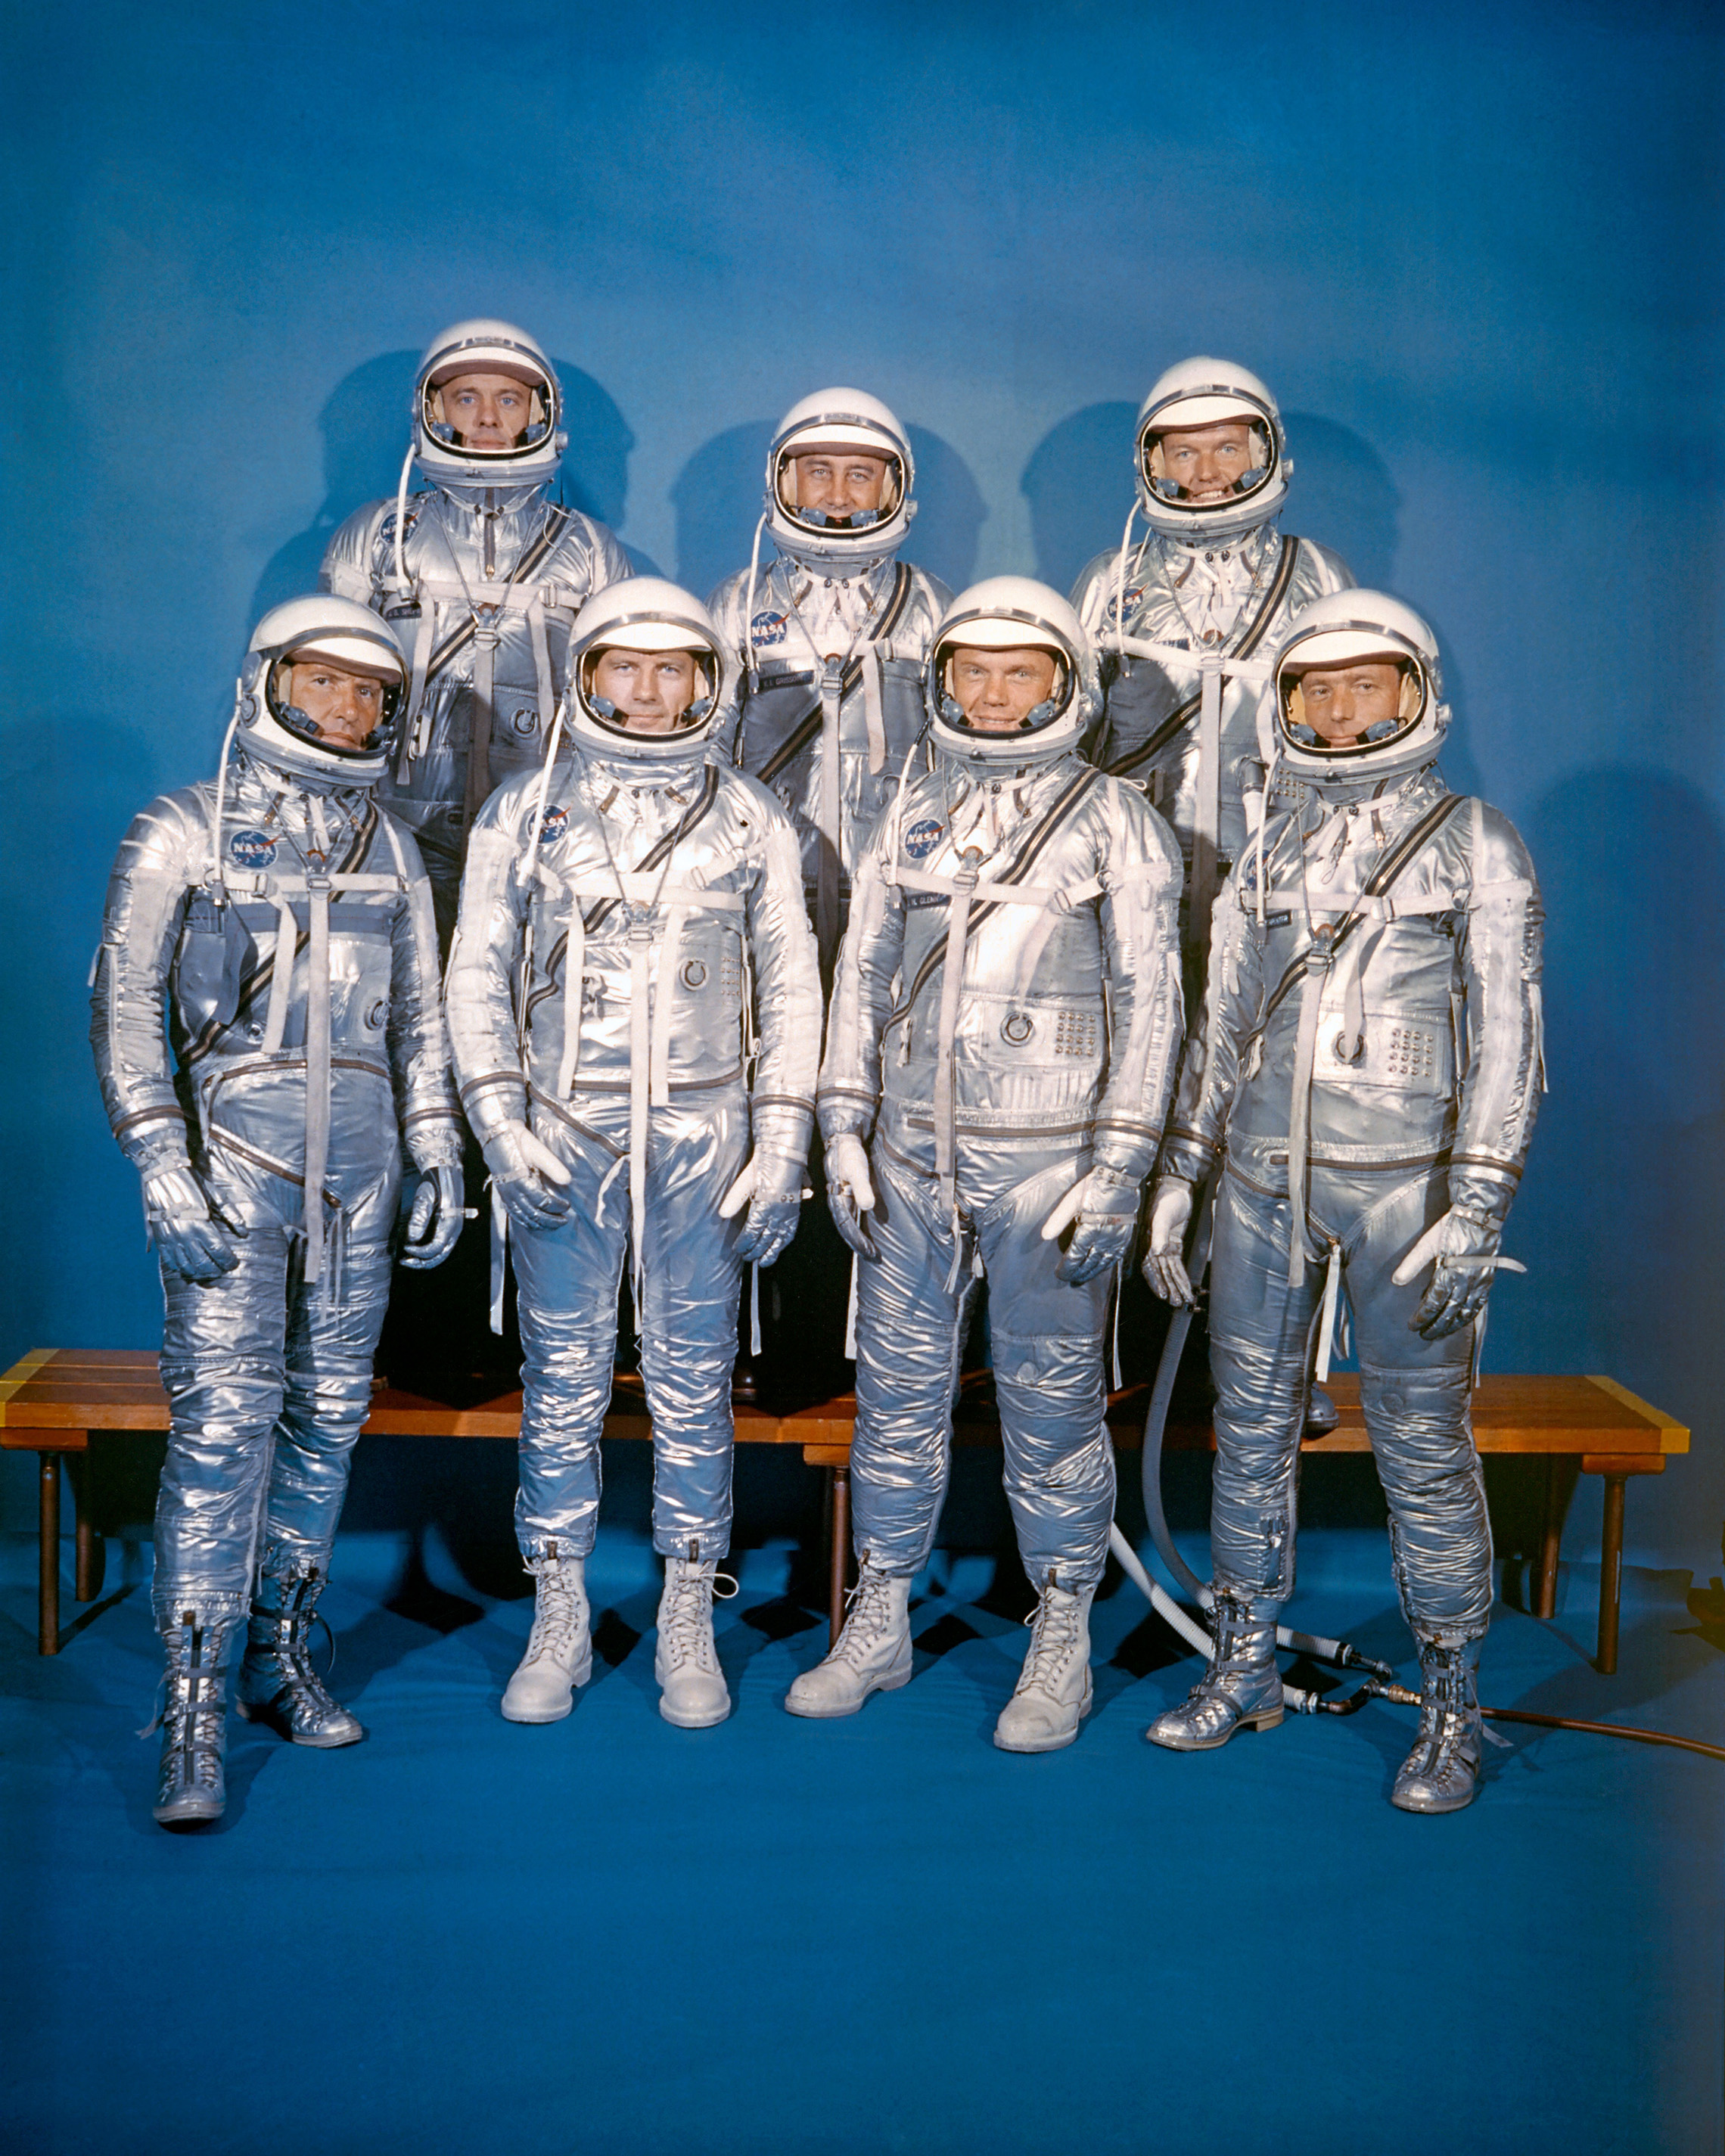 április 9-én 1959-ben a NASA bemutatta első űrhajós osztályát, a Mercury 7-et. Első sor, balról jobbra: Walter M. Schirra, Jr., Donald K. "Deke" Slayton, John H. Glenn, Jr. és M. Scott Carpenter; hátsó sor, Alan B. Shepard, Jr., Virgil I. "Gus" Grissom és L. Gordon Cooper, Jr. (NASA)"Deke" Slayton, John H. Glenn, Jr., and M. Scott Carpenter; back row, Alan B. Shepard, Jr., Virgil I. "Gus" Grissom, and L. Gordon Cooper, Jr. (NASA)